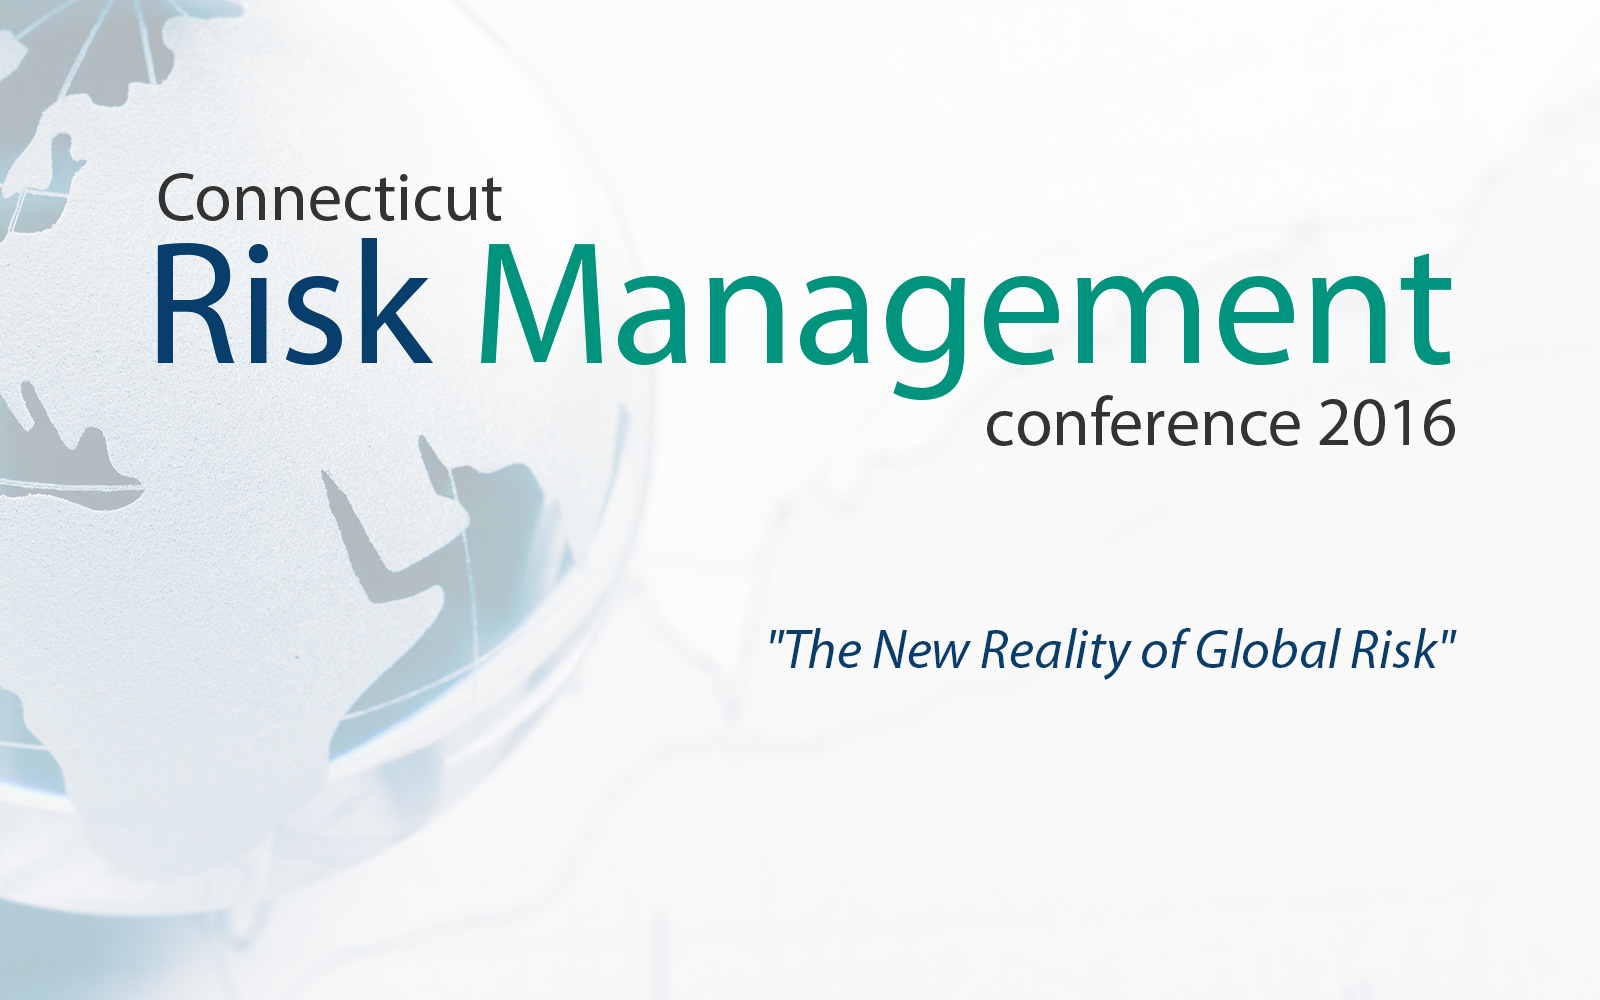 Connecticut Risk Management Conference 2016